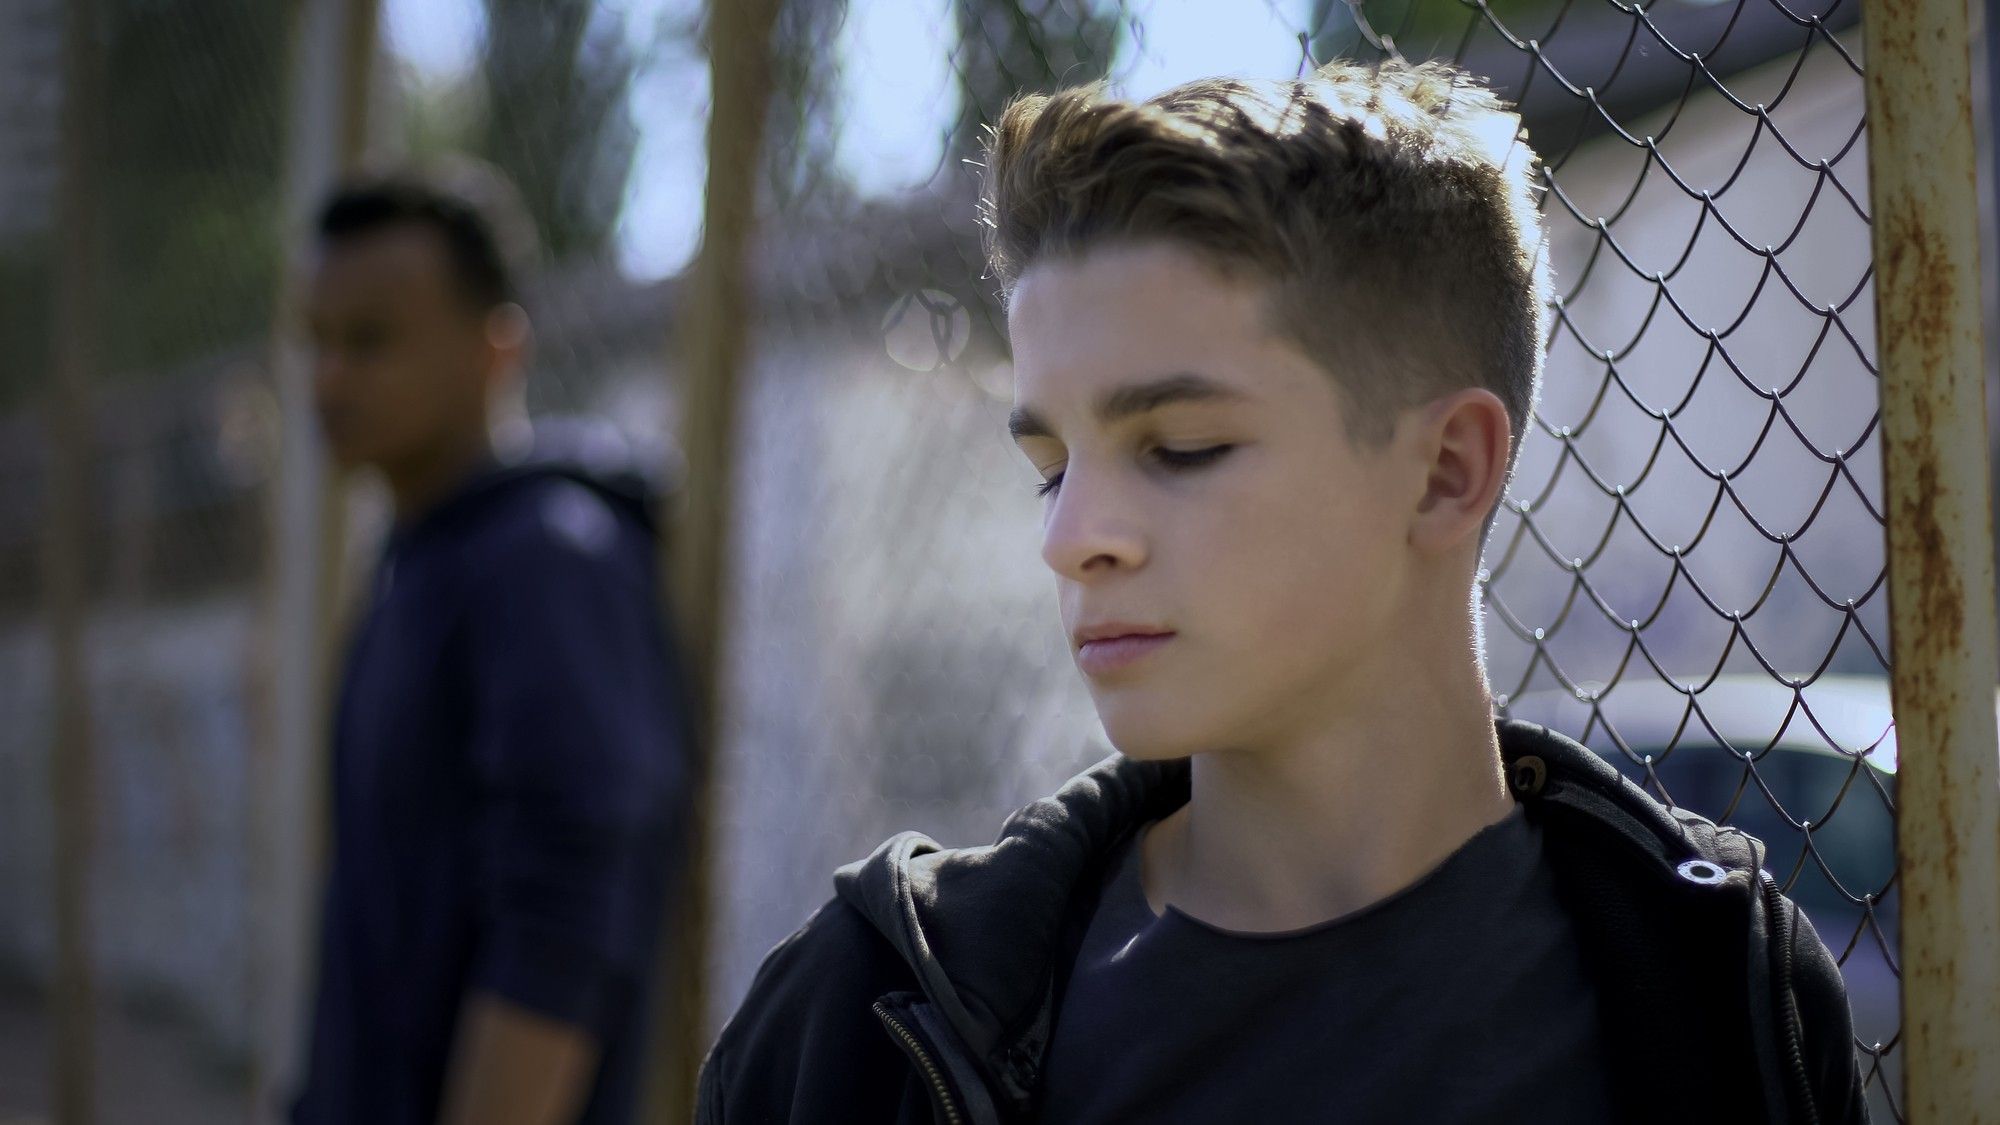 teen boy in detention center yard